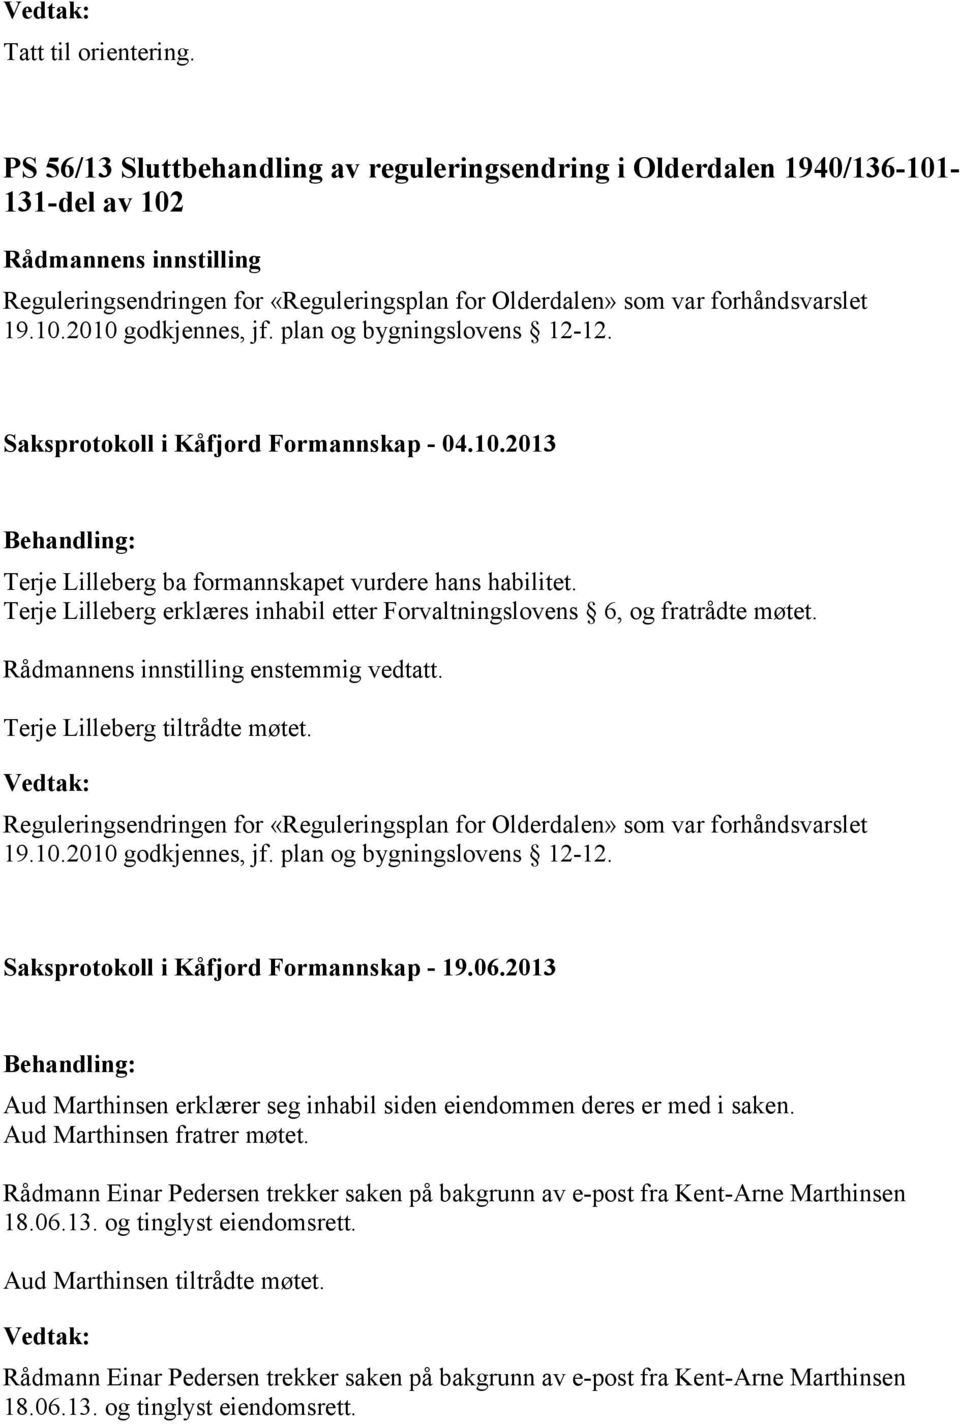 Terje Lilleberg tiltrådte møtet. Reguleringsendringen for «Reguleringsplan for Olderdalen» som var forhåndsvarslet 19.10.2010 godkjennes, jf. plan og bygningslovens 12-12.